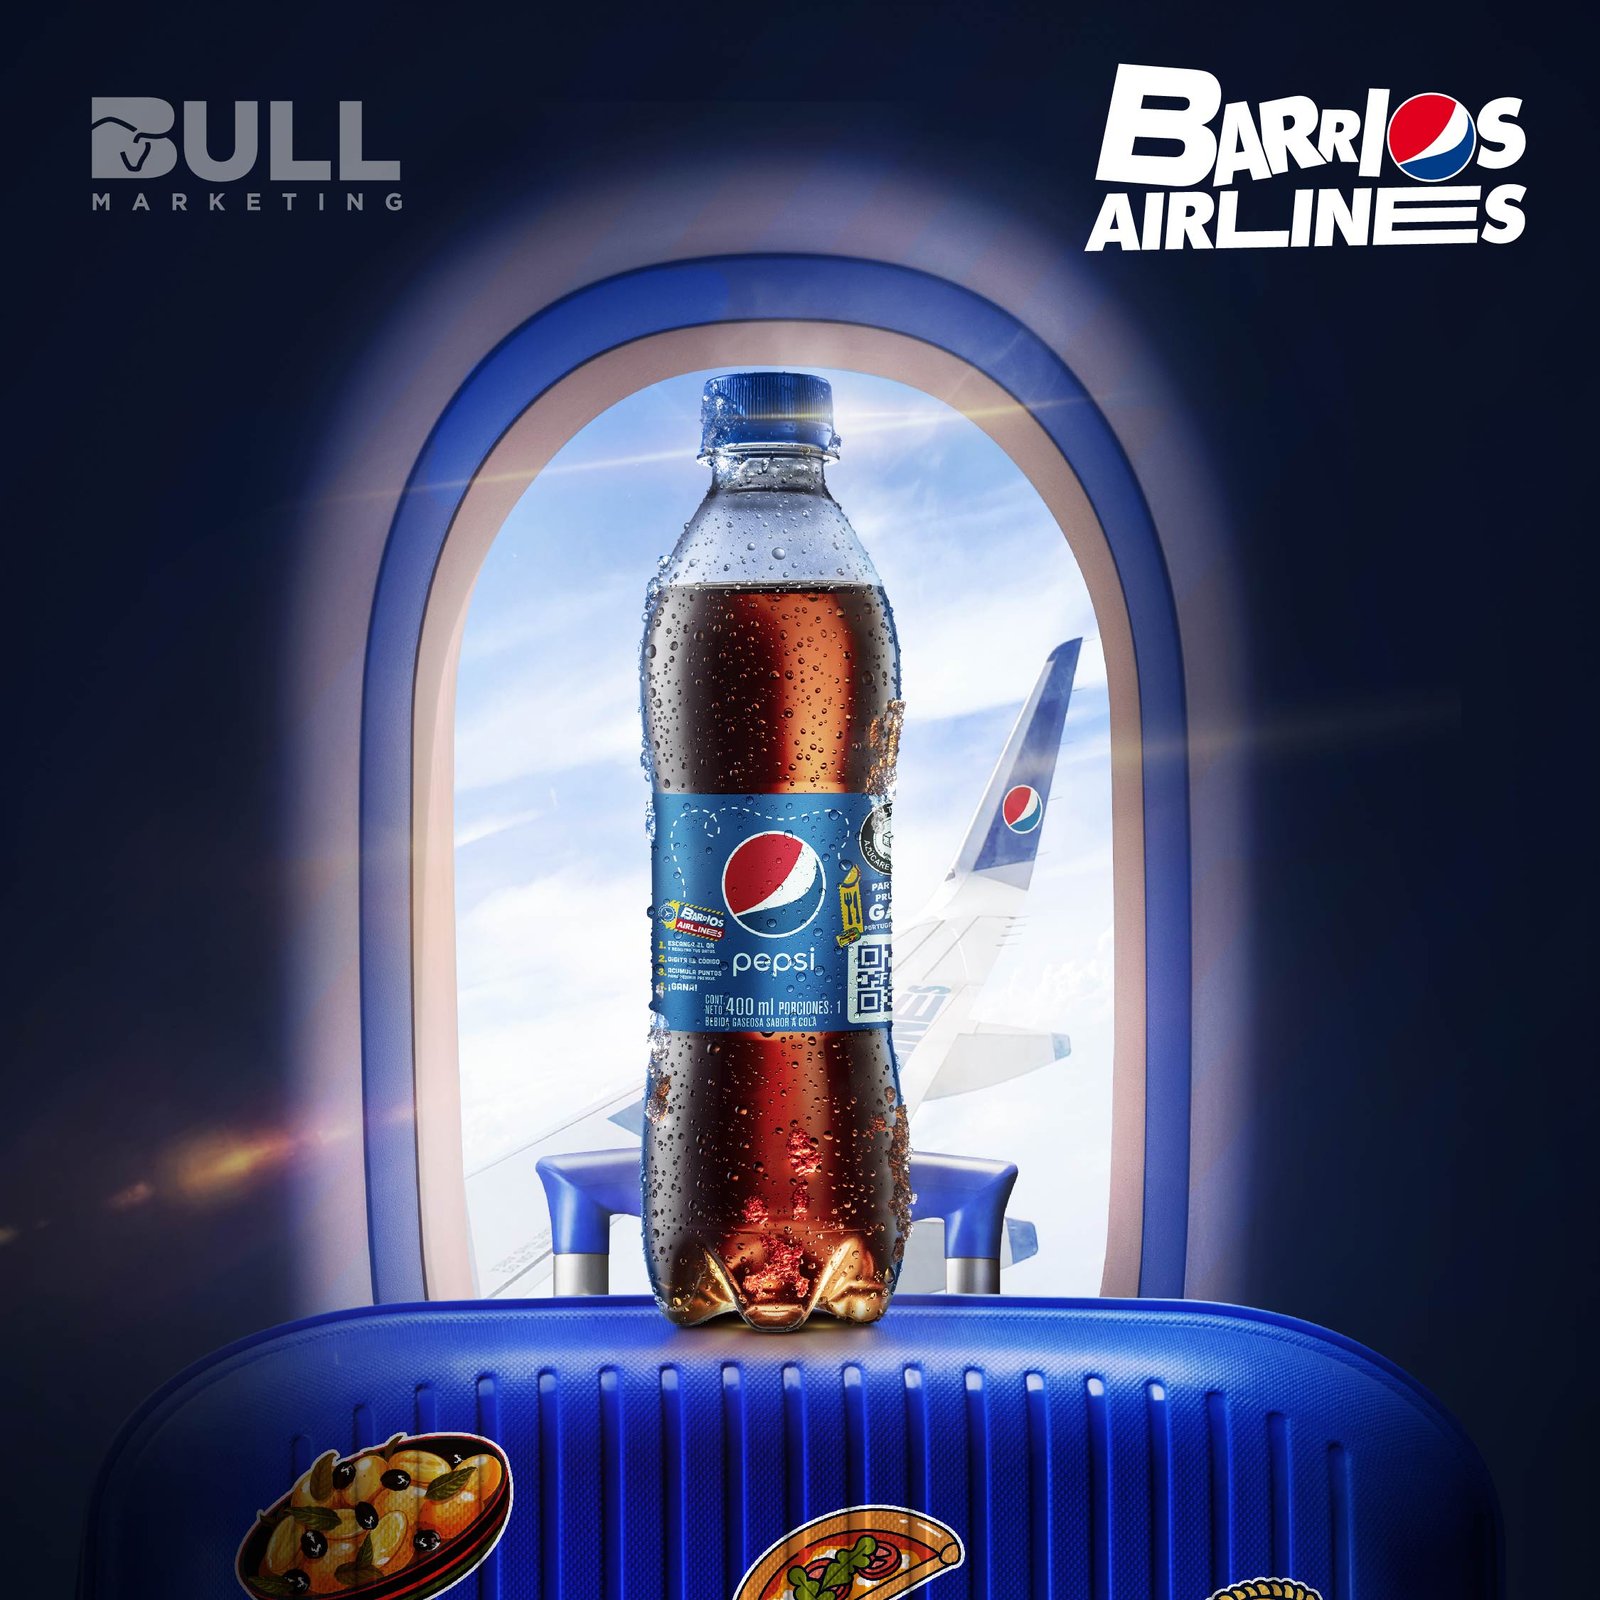 Big-Promo-Digital-Pepsi-Barrios-Airlines